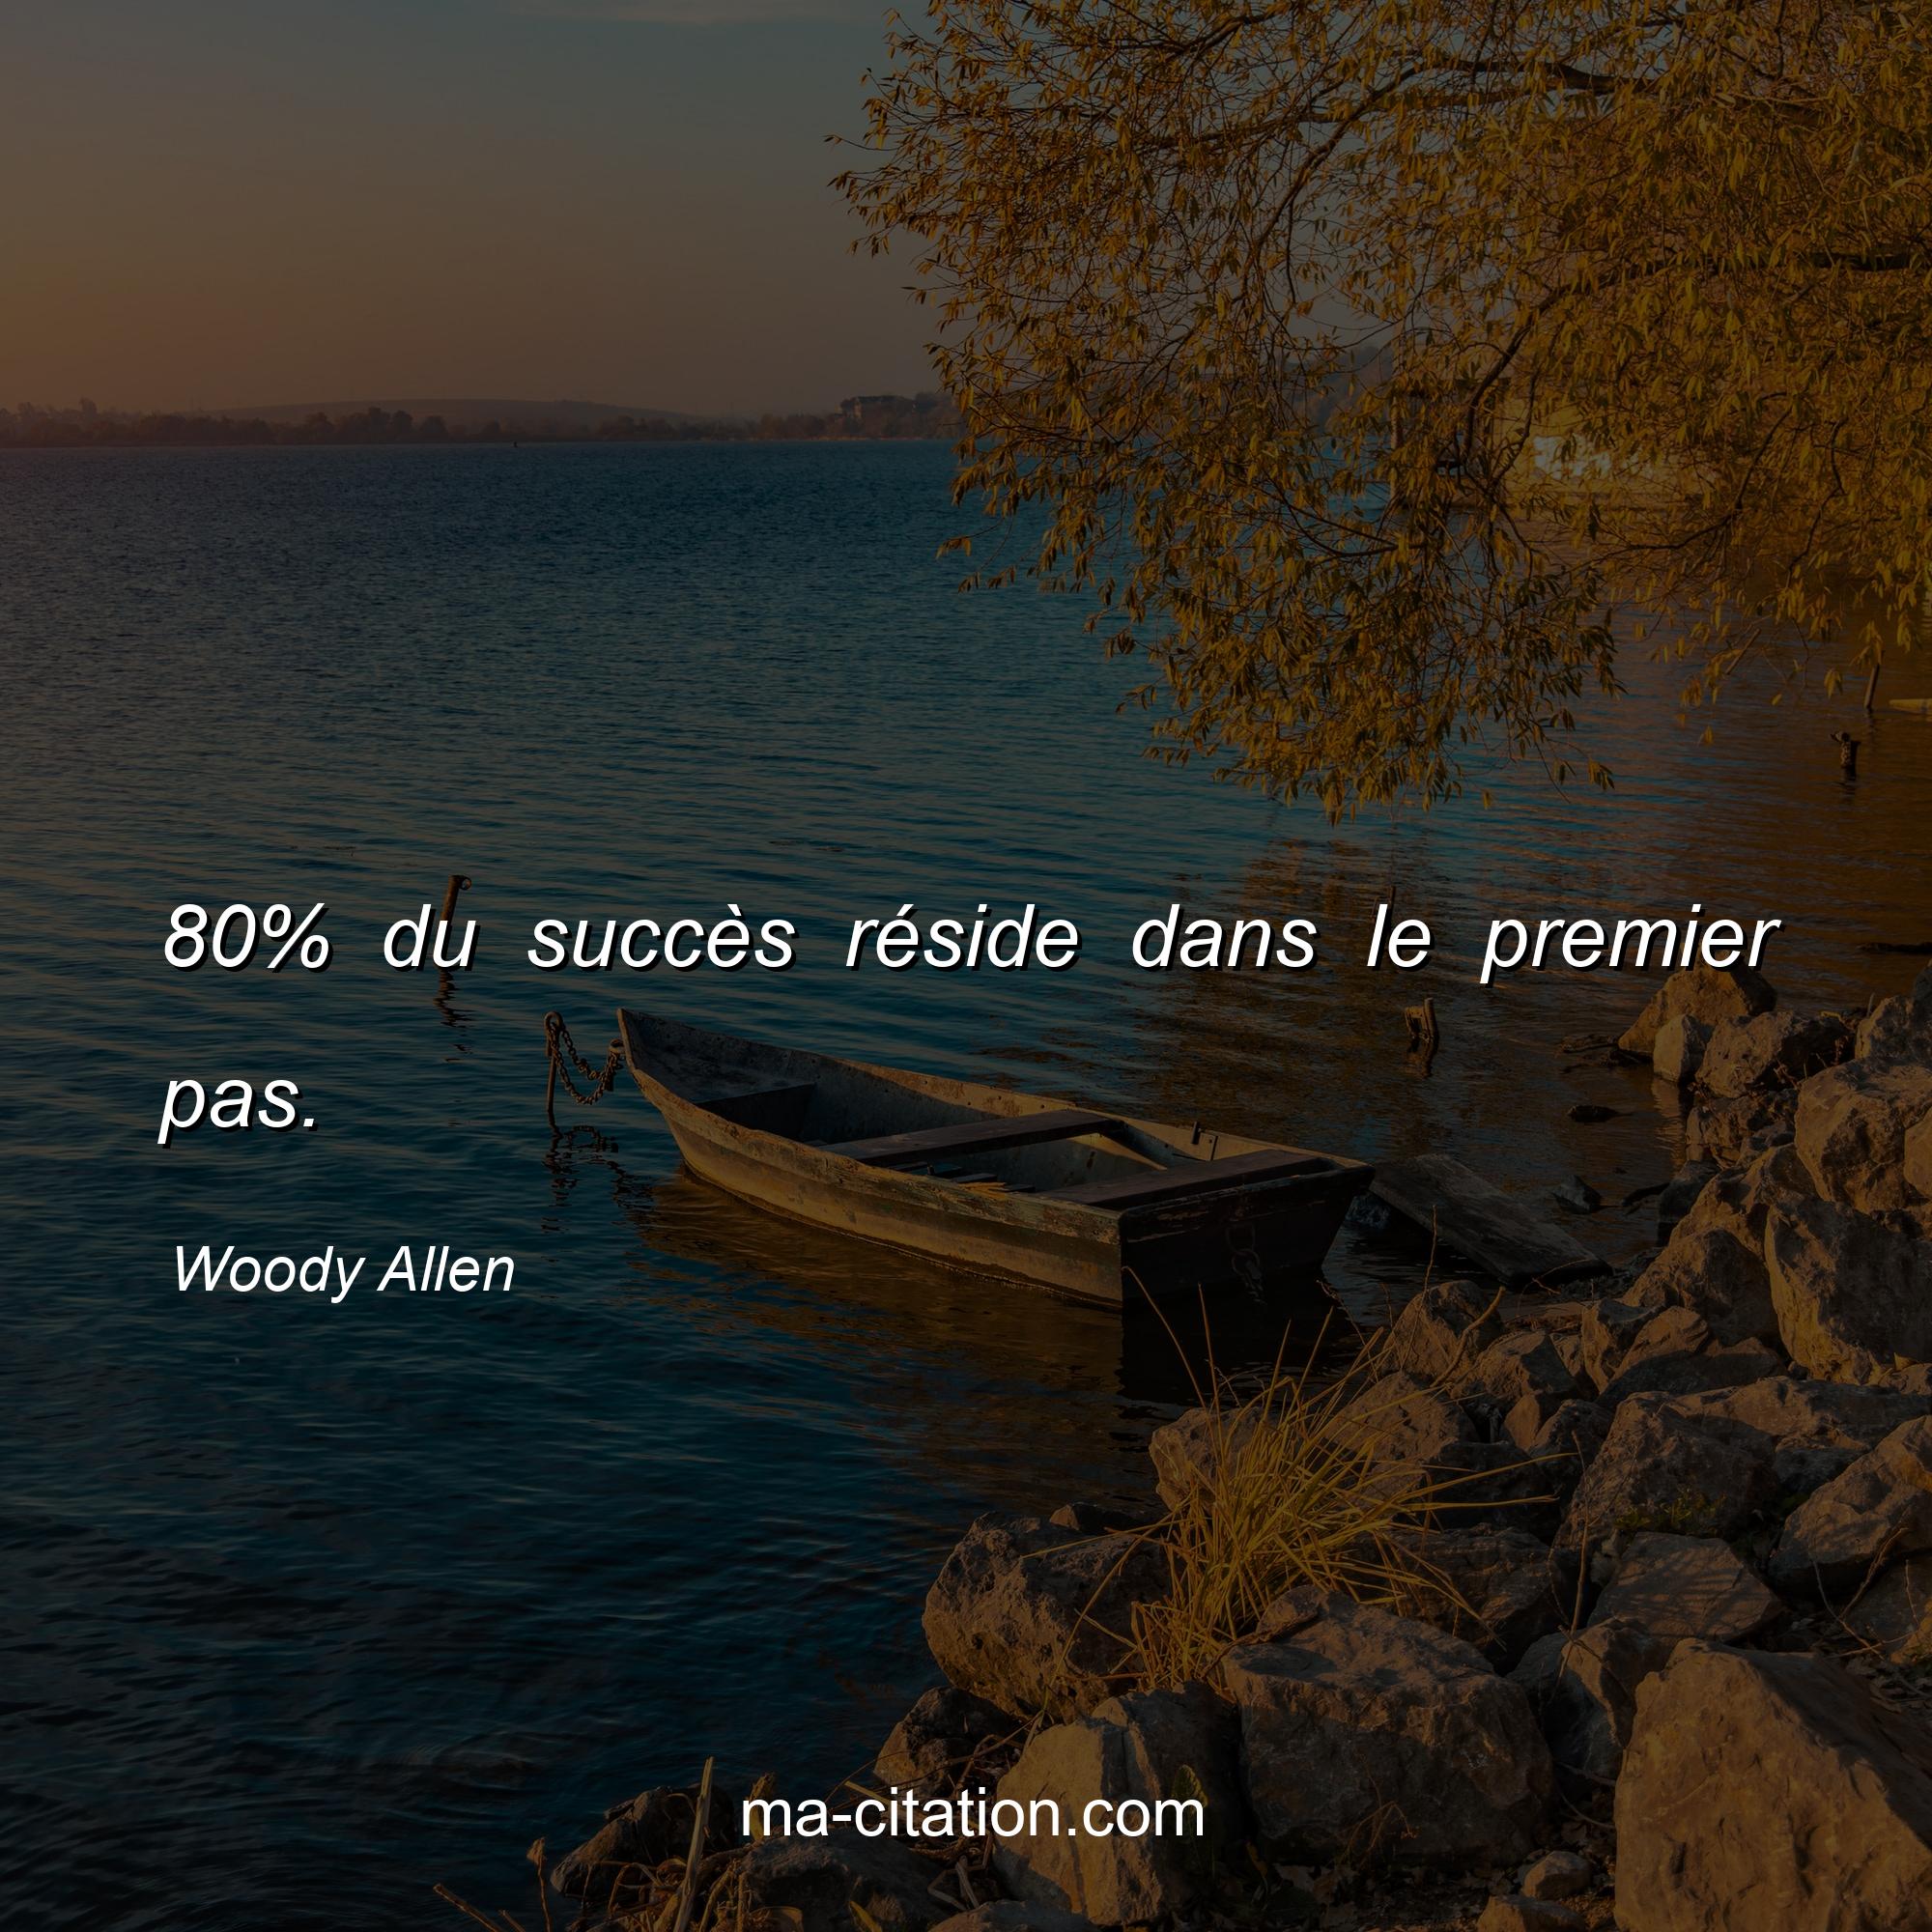 Woody Allen : 80% du succès réside dans le premier pas.